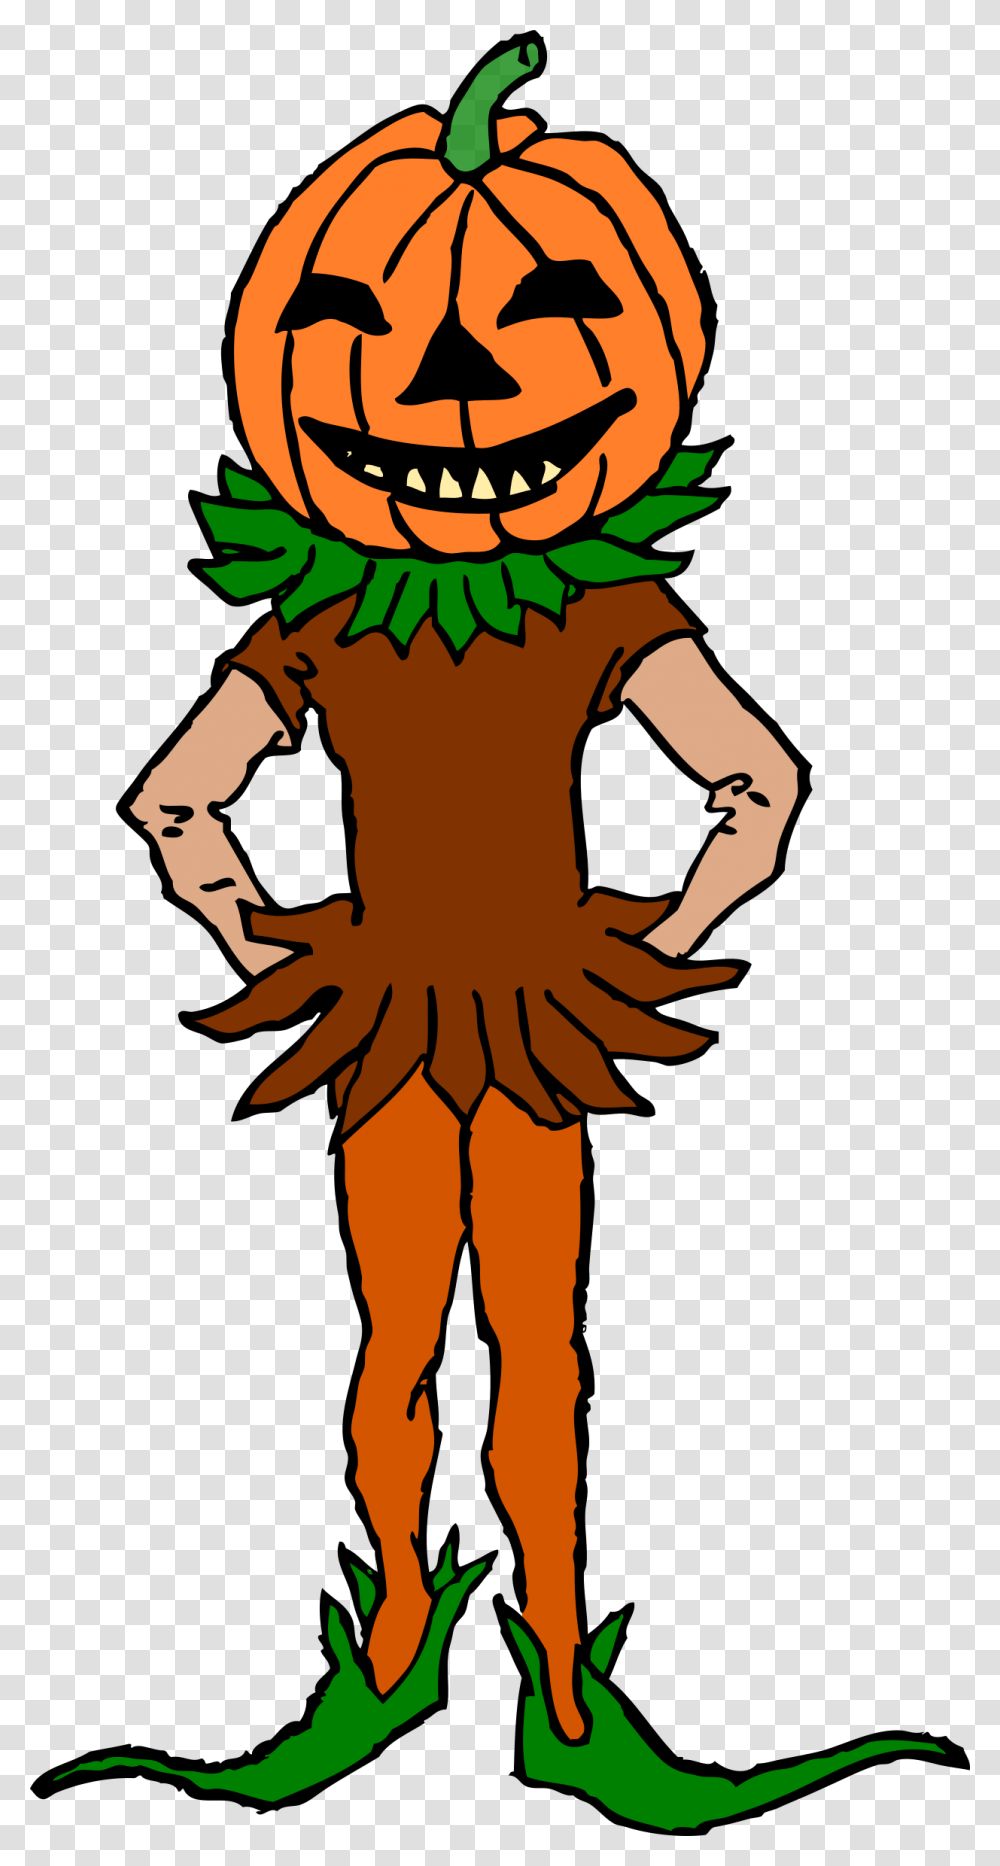 Pumpkin Boy Color Version Clip Arts Cartoon Pumpkin Head Boy, Person, Human, Logo Transparent Png